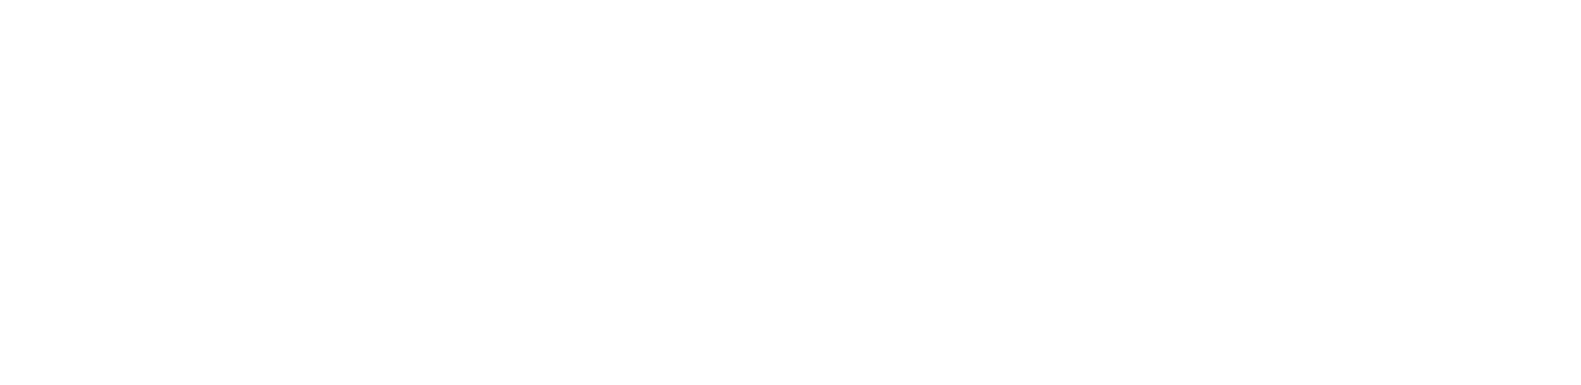 Logos Contabilidade Digital | Contabilidade em Mato Grosso do Sul